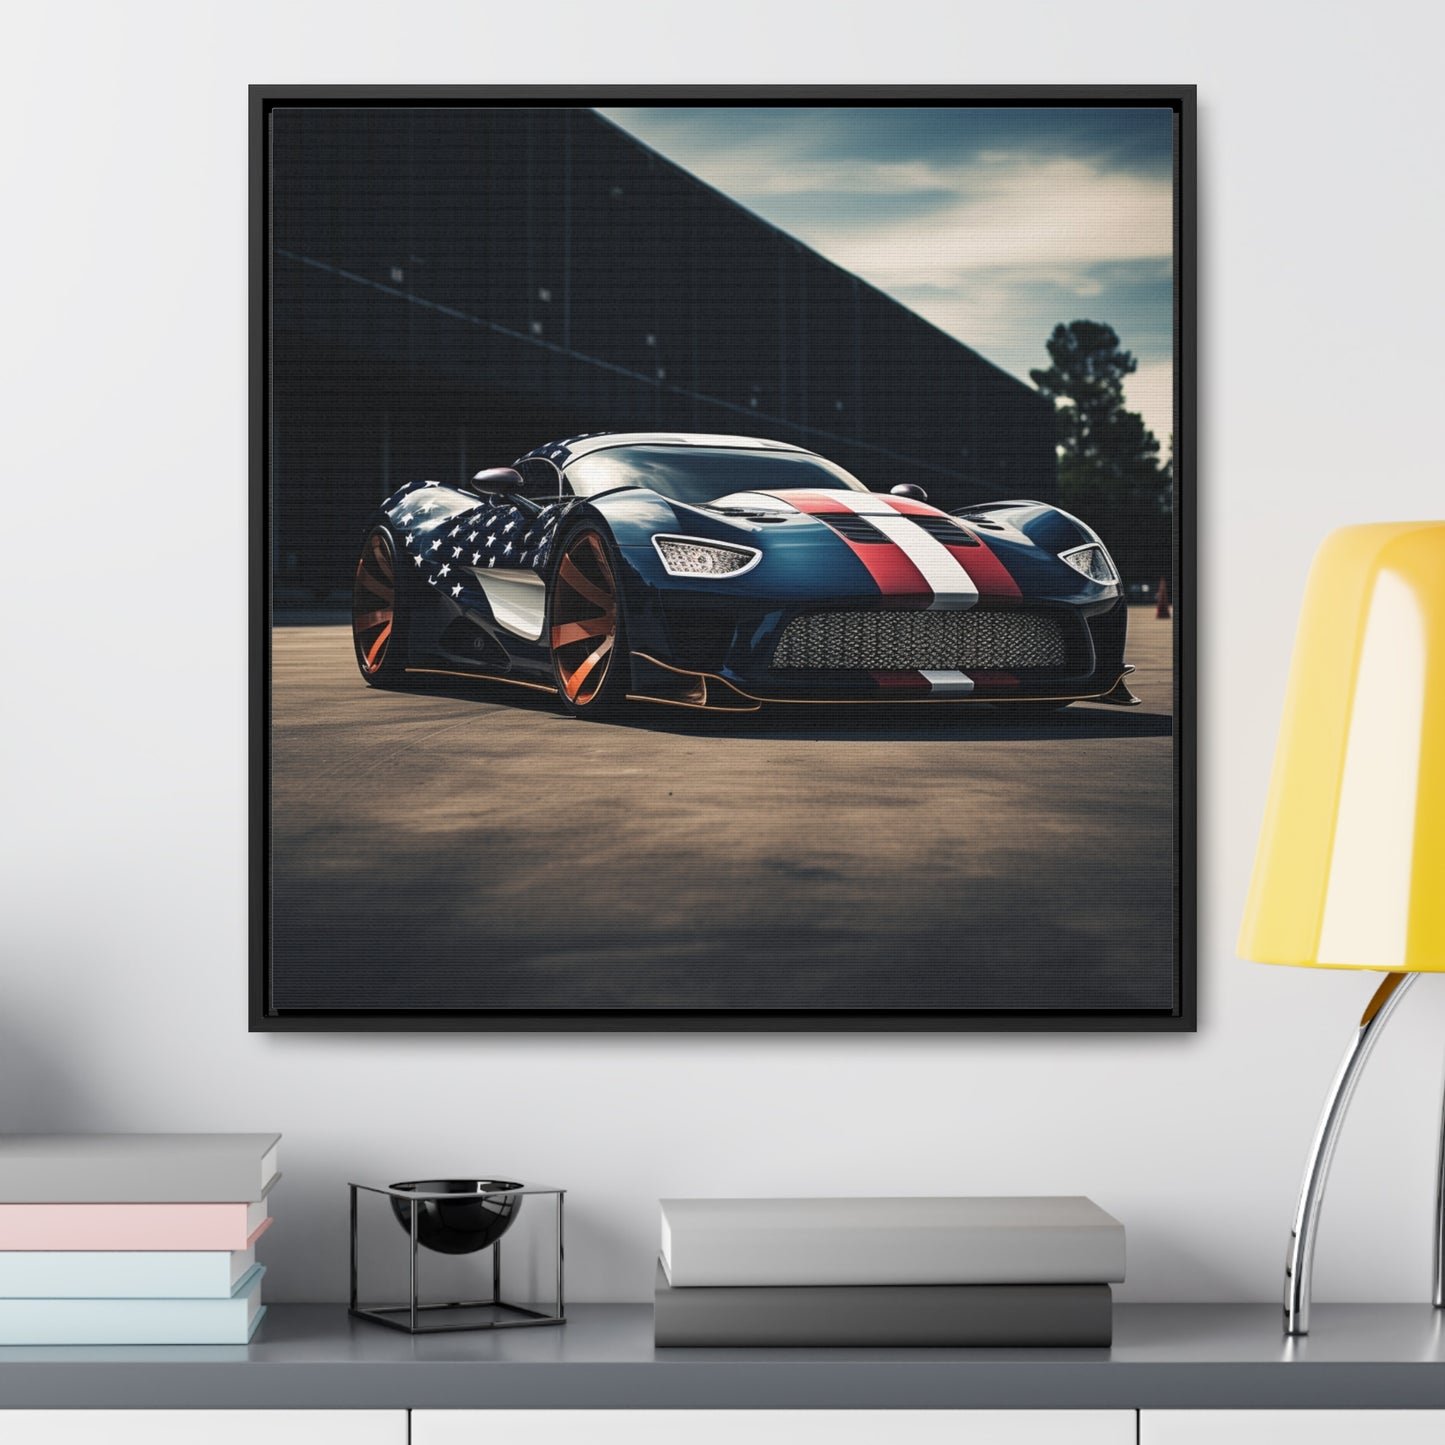 Gallery Canvas Wraps, Square Frame Bugatti Flag American 2